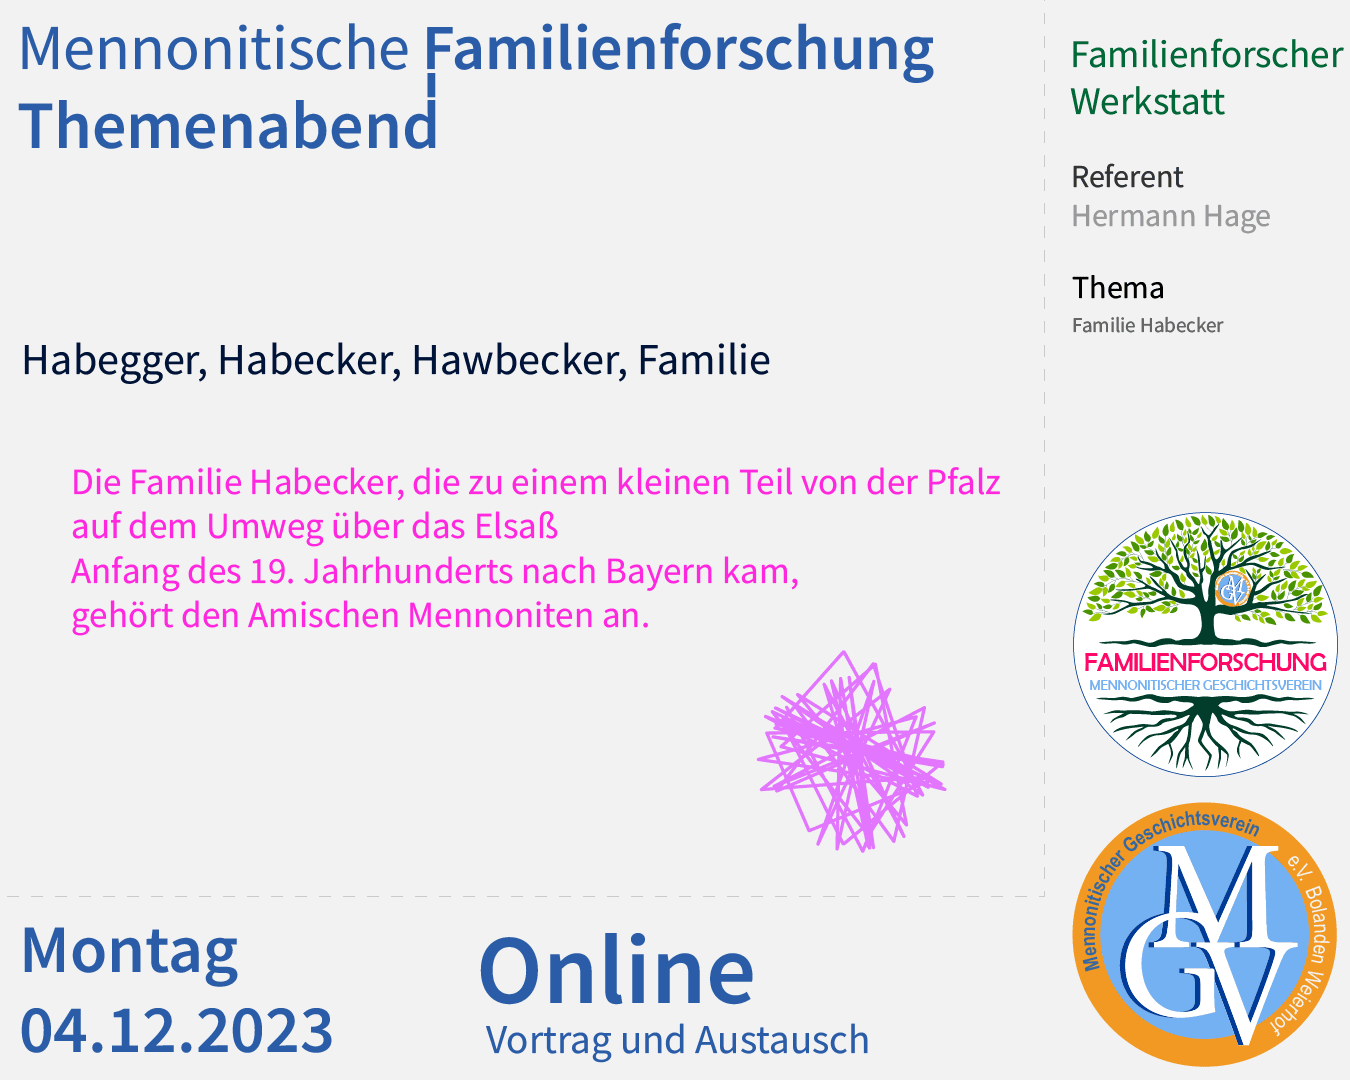 Mennonitische Familienforschung Amische Familie Habecker in Bayern